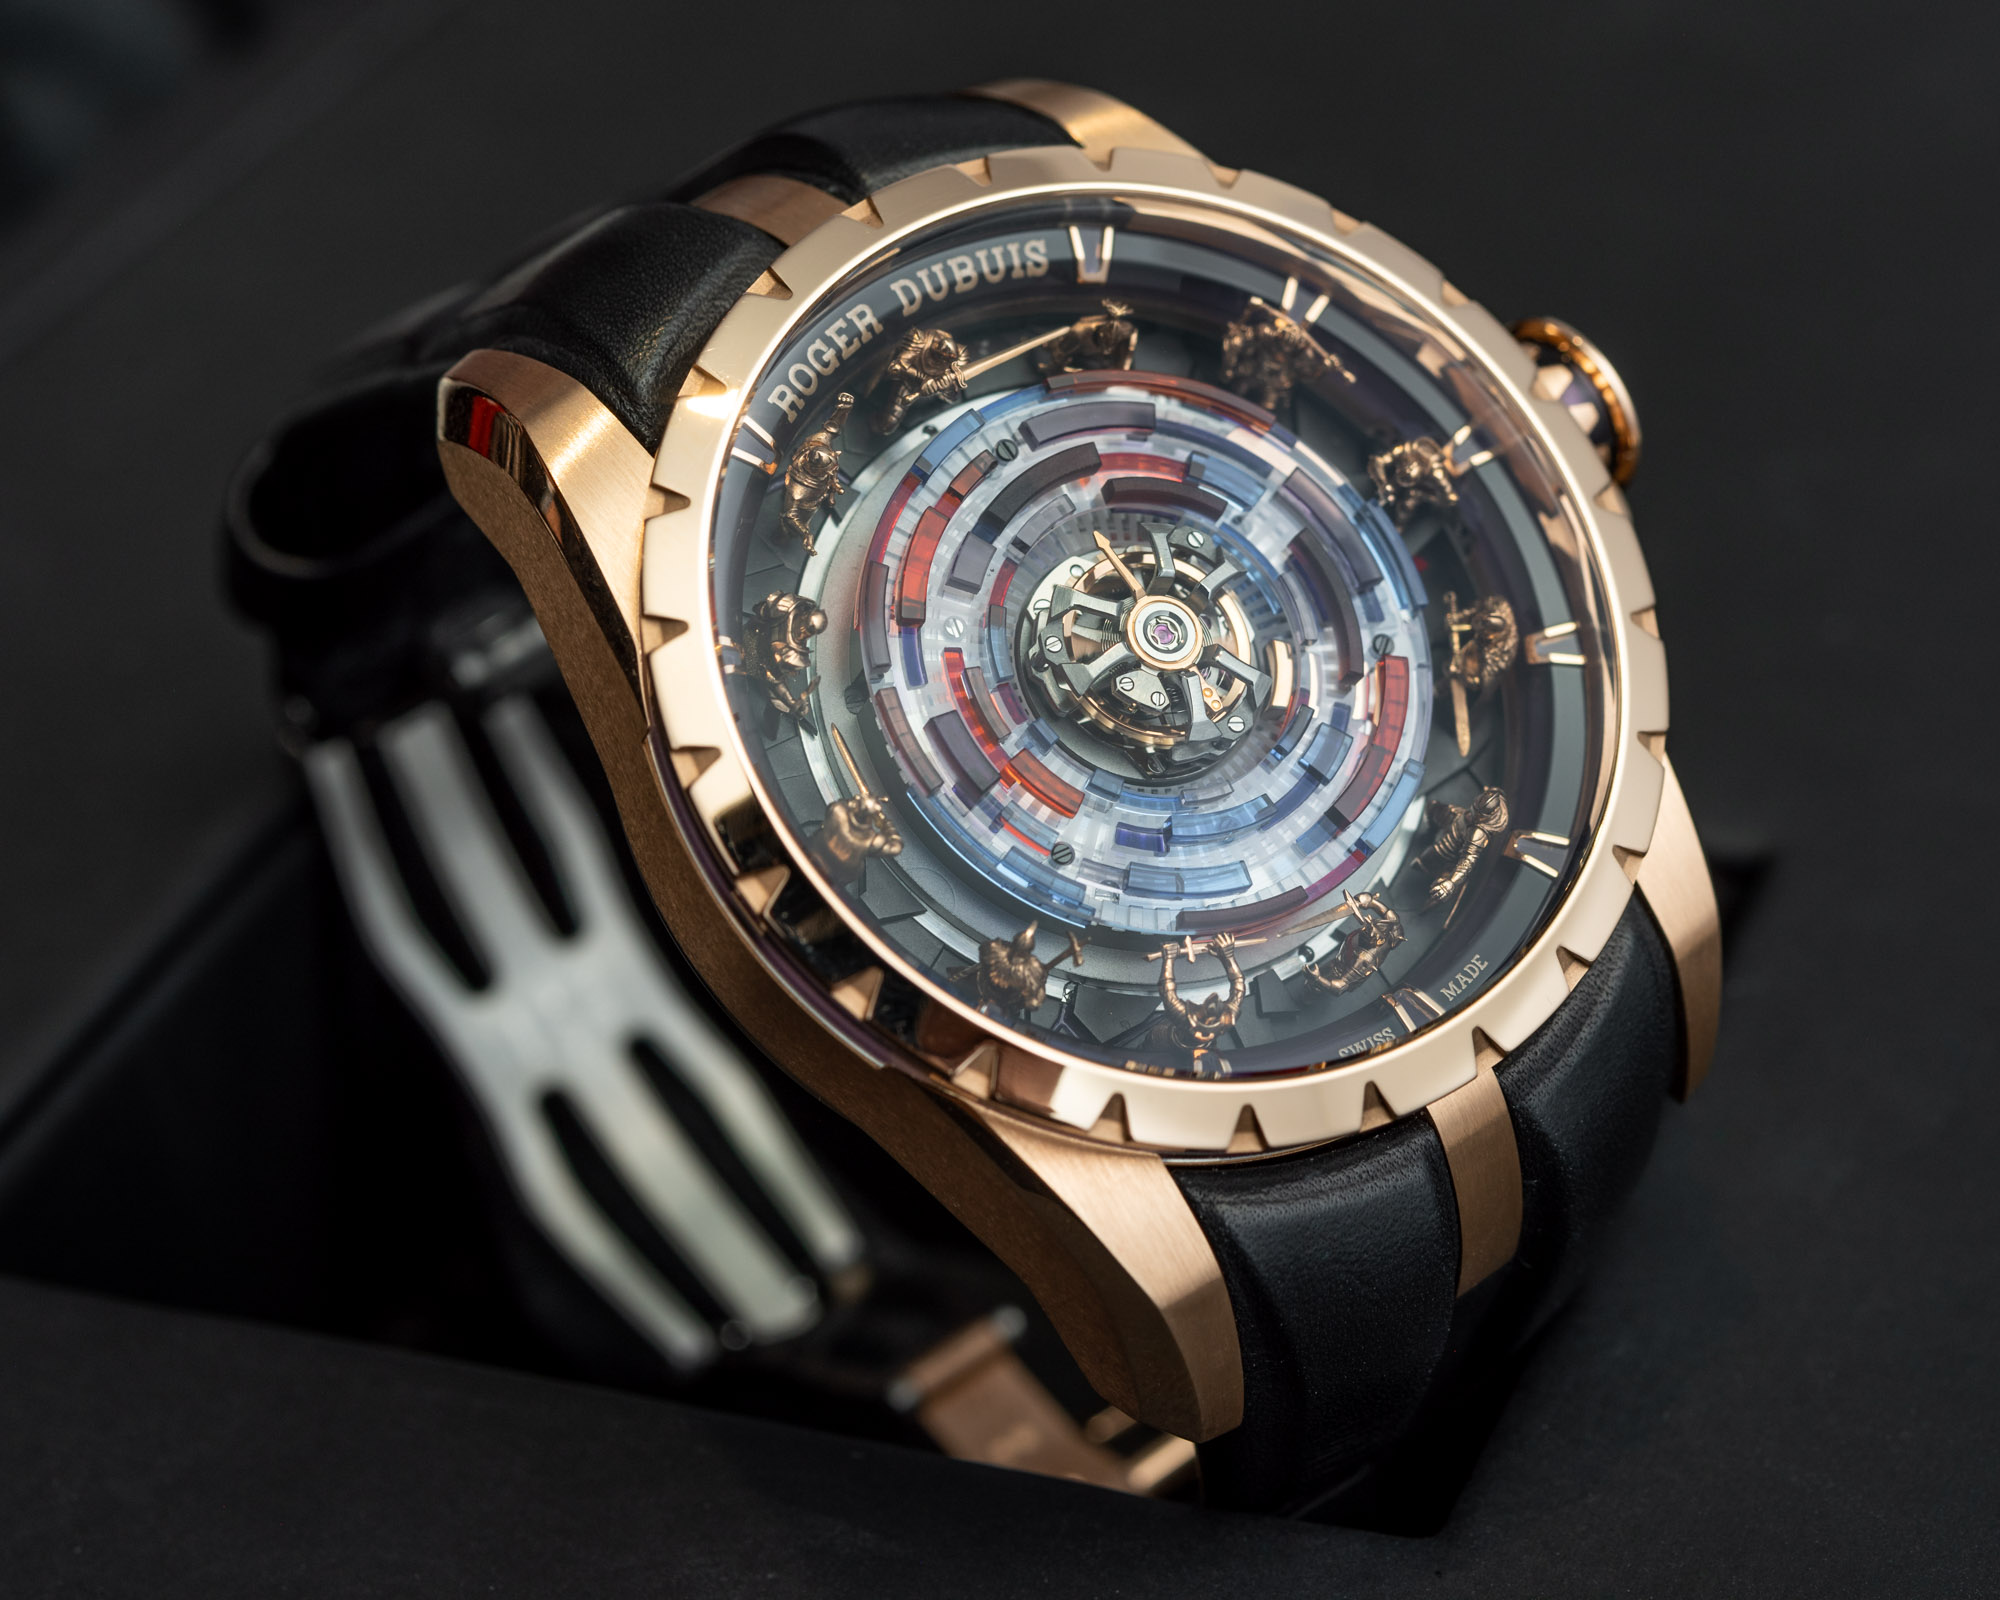 Обзор часов Roger Dubuis Knights Of The Round Table Monotourbillon из розового золота стоимостью $580 000